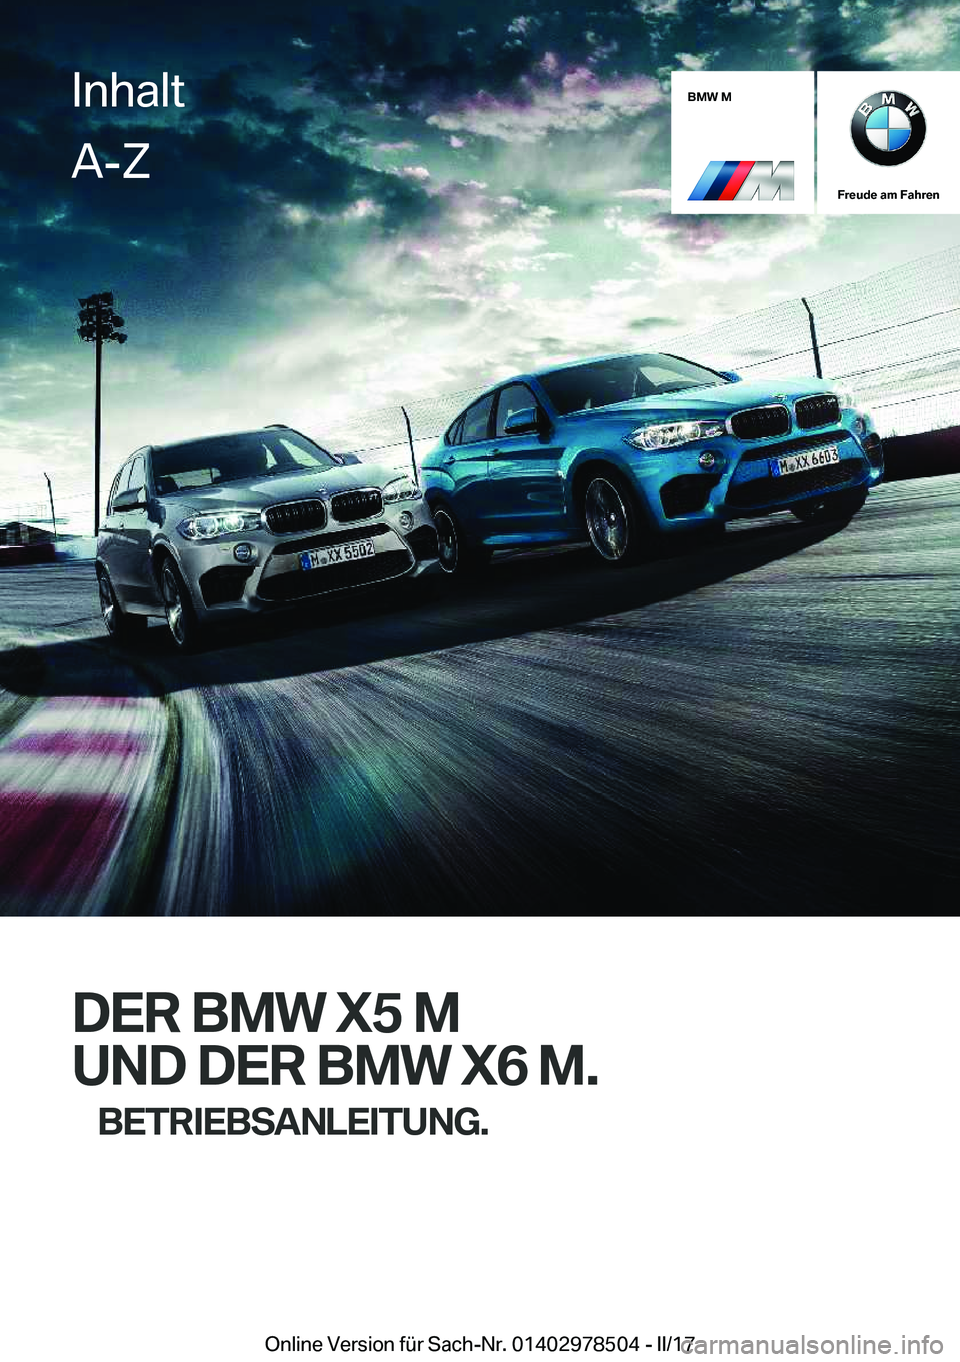 BMW X6 M 2017  Betriebsanleitungen (in German) �B�M�W��M
�F�r�e�u�d�e��a�m��F�a�h�r�e�n
�D�E�R��B�M�W��X�5��M�U�N�D��D�E�R��B�M�W��X�6��M�. �B�E�T�R�I�E�B�S�A�N�L�E�I�T�U�N�G�.
�I�n�h�a�l�t�A�-�Z
�O�n�l�i�n�e� �V�e�r�s�i�o�n� �f�ü�r� �S